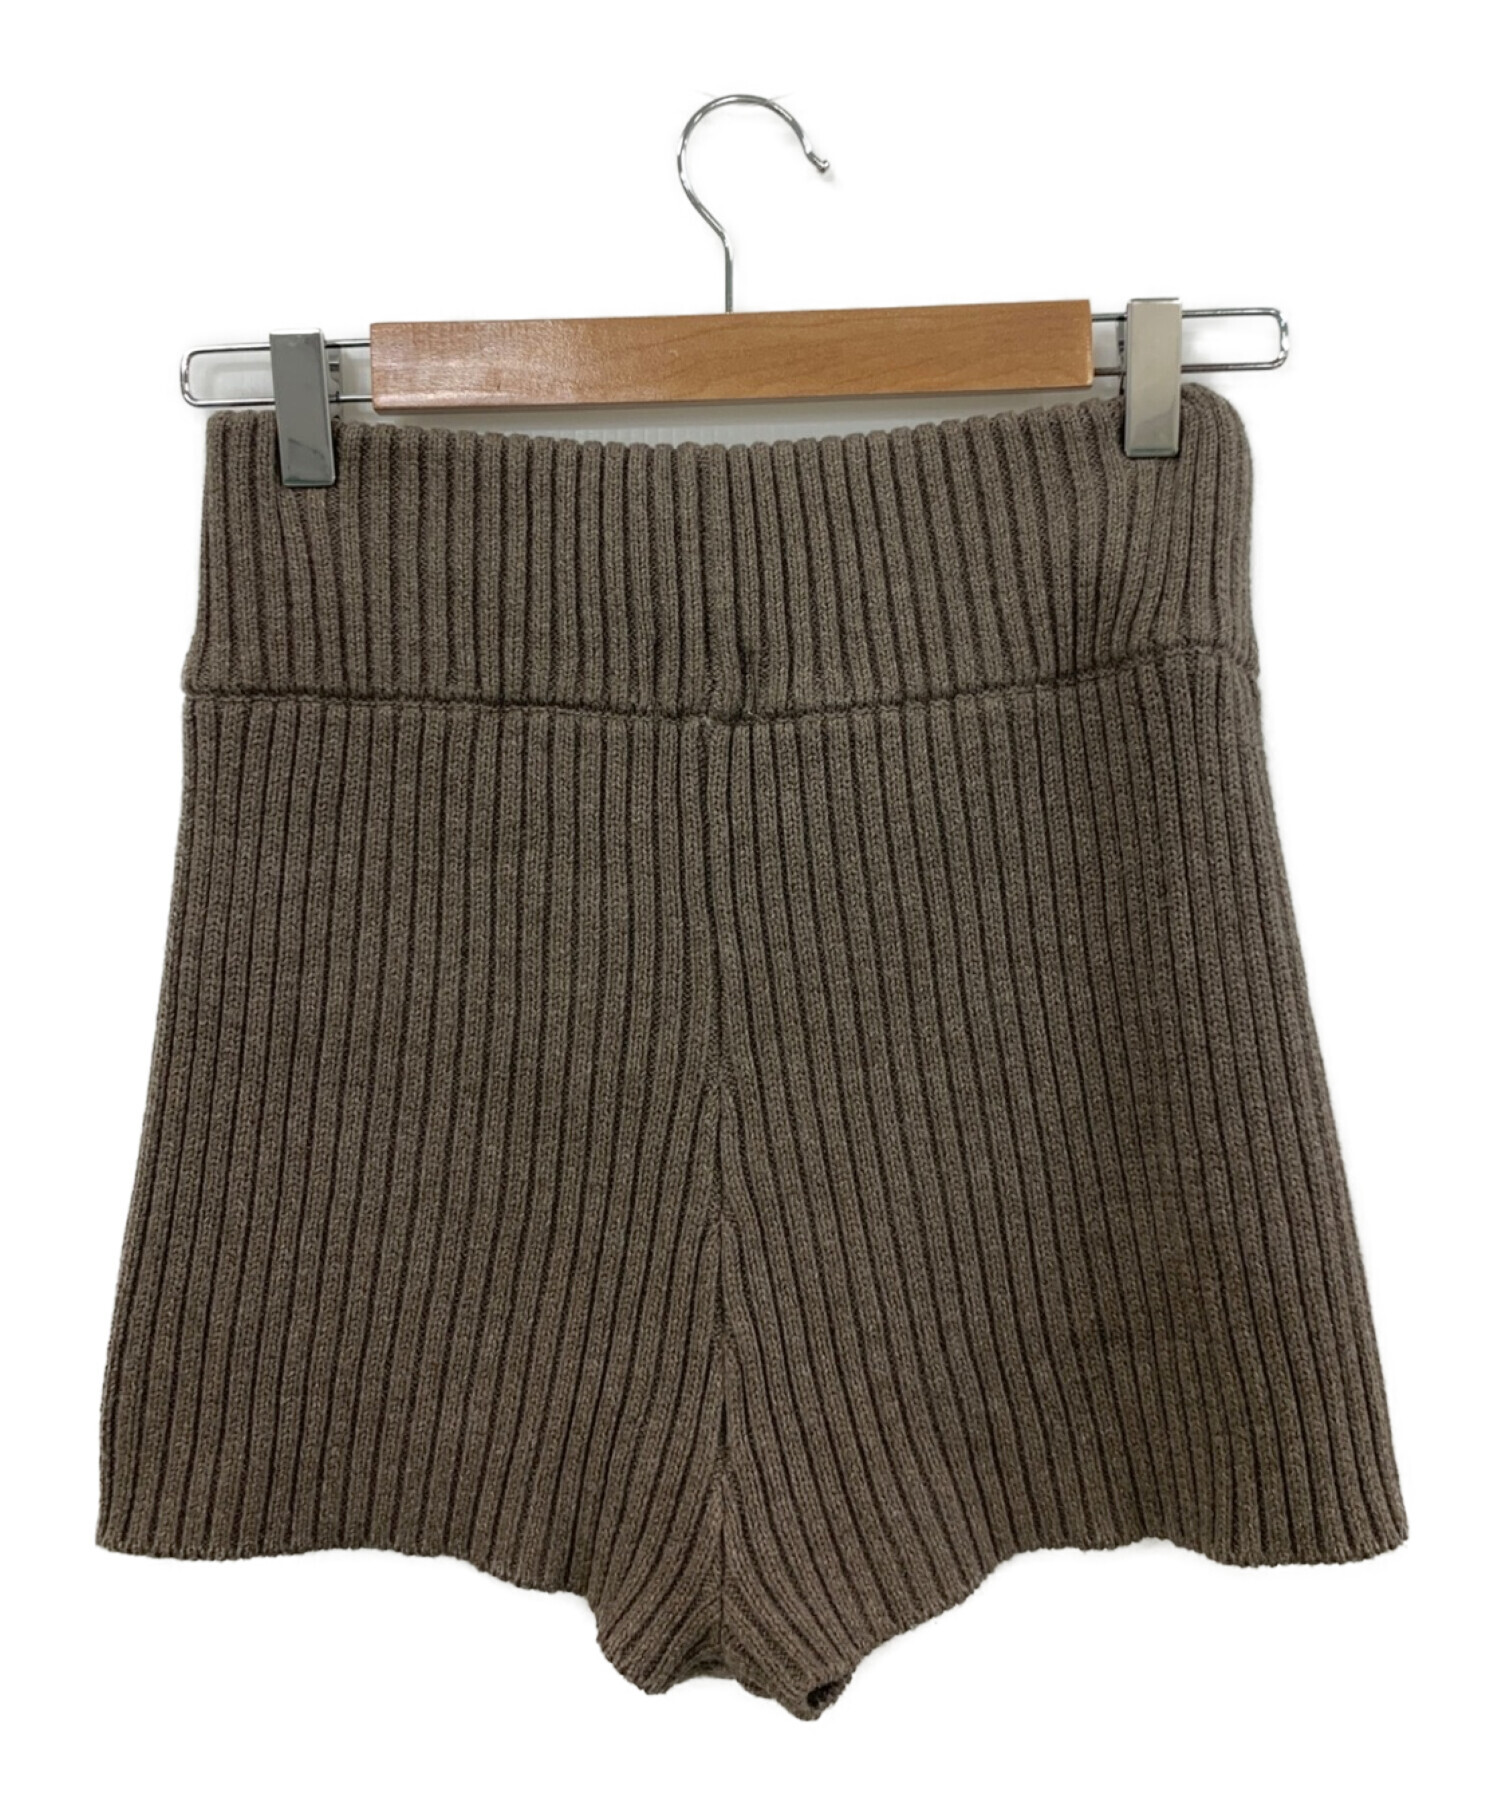 juemi Heather Knit Shortsパンツ - ショートパンツ